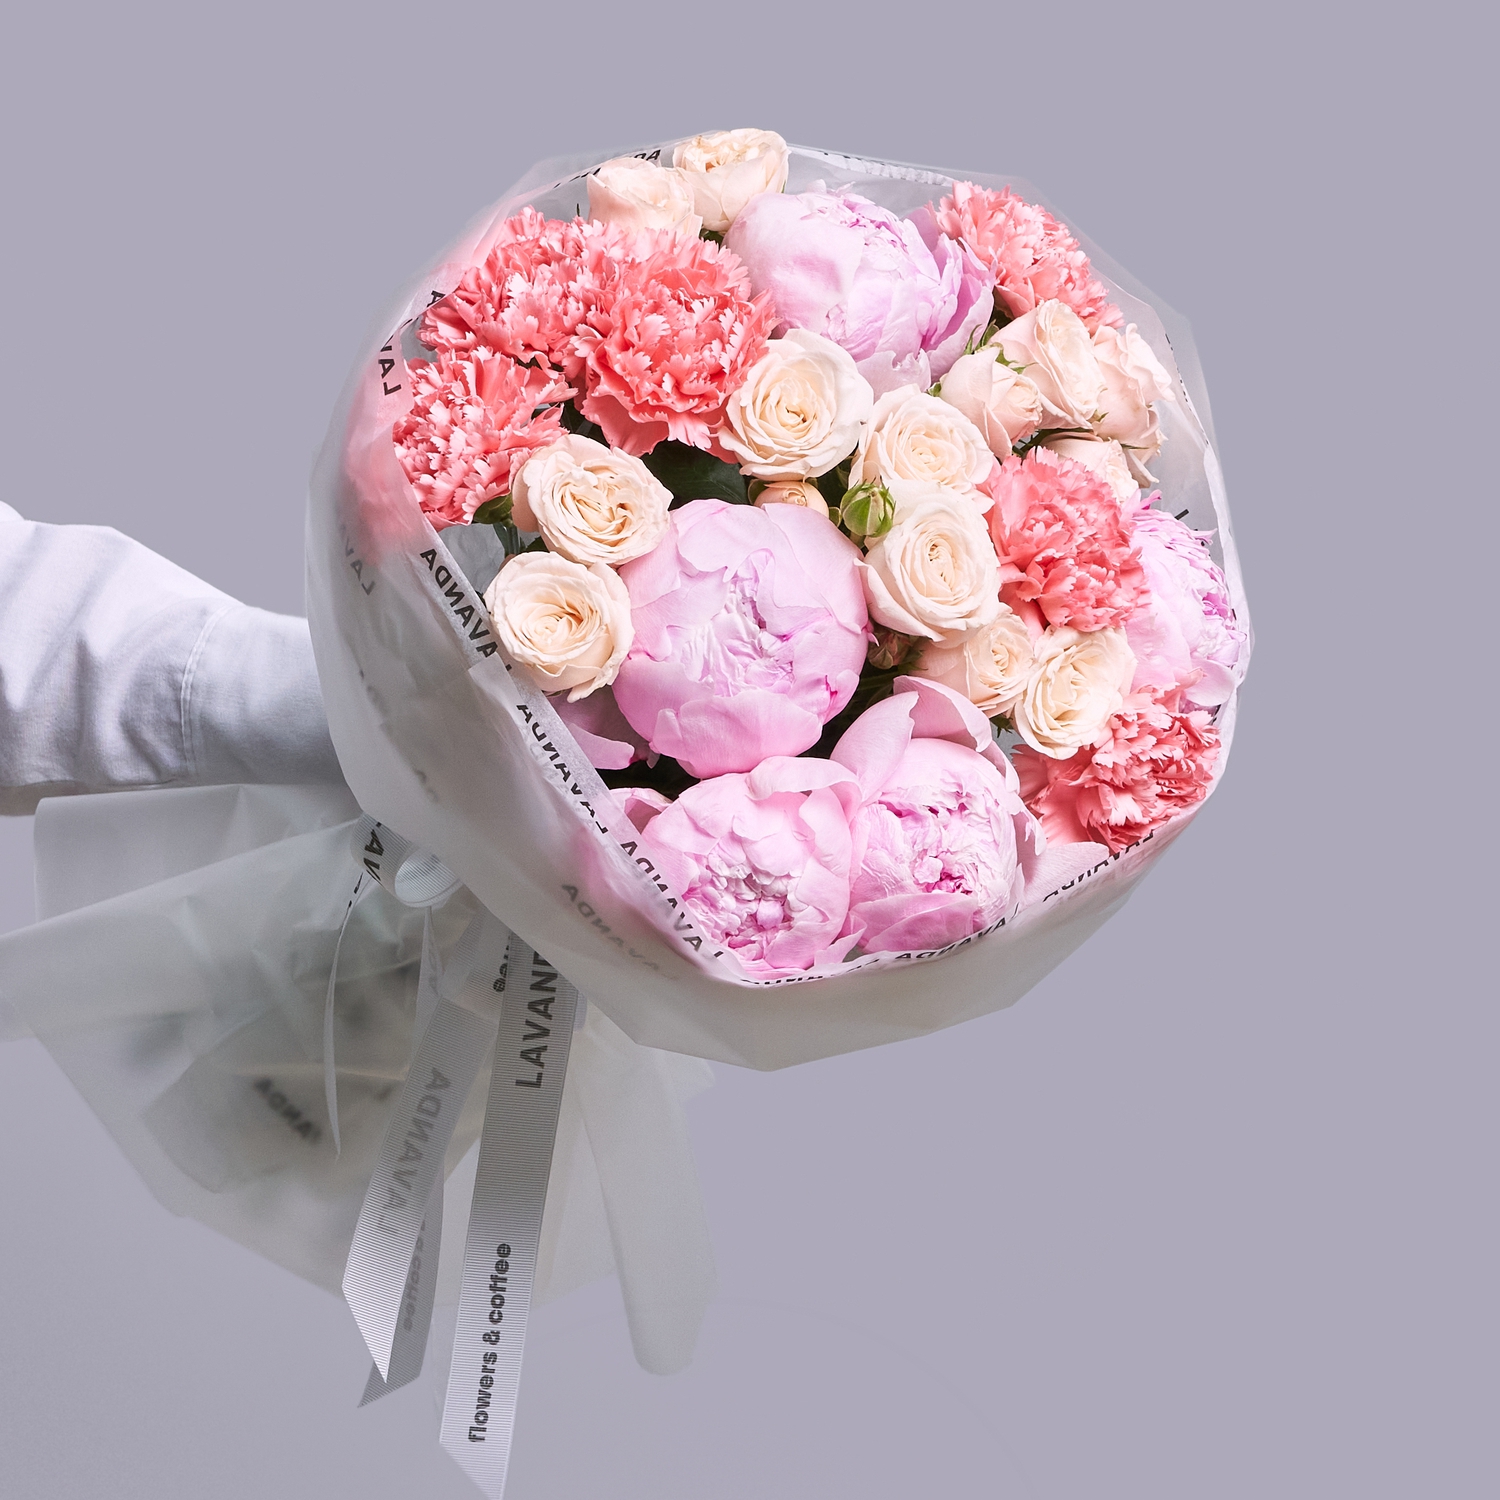 Воздушный розовый букетик пионов, роз и диантусов